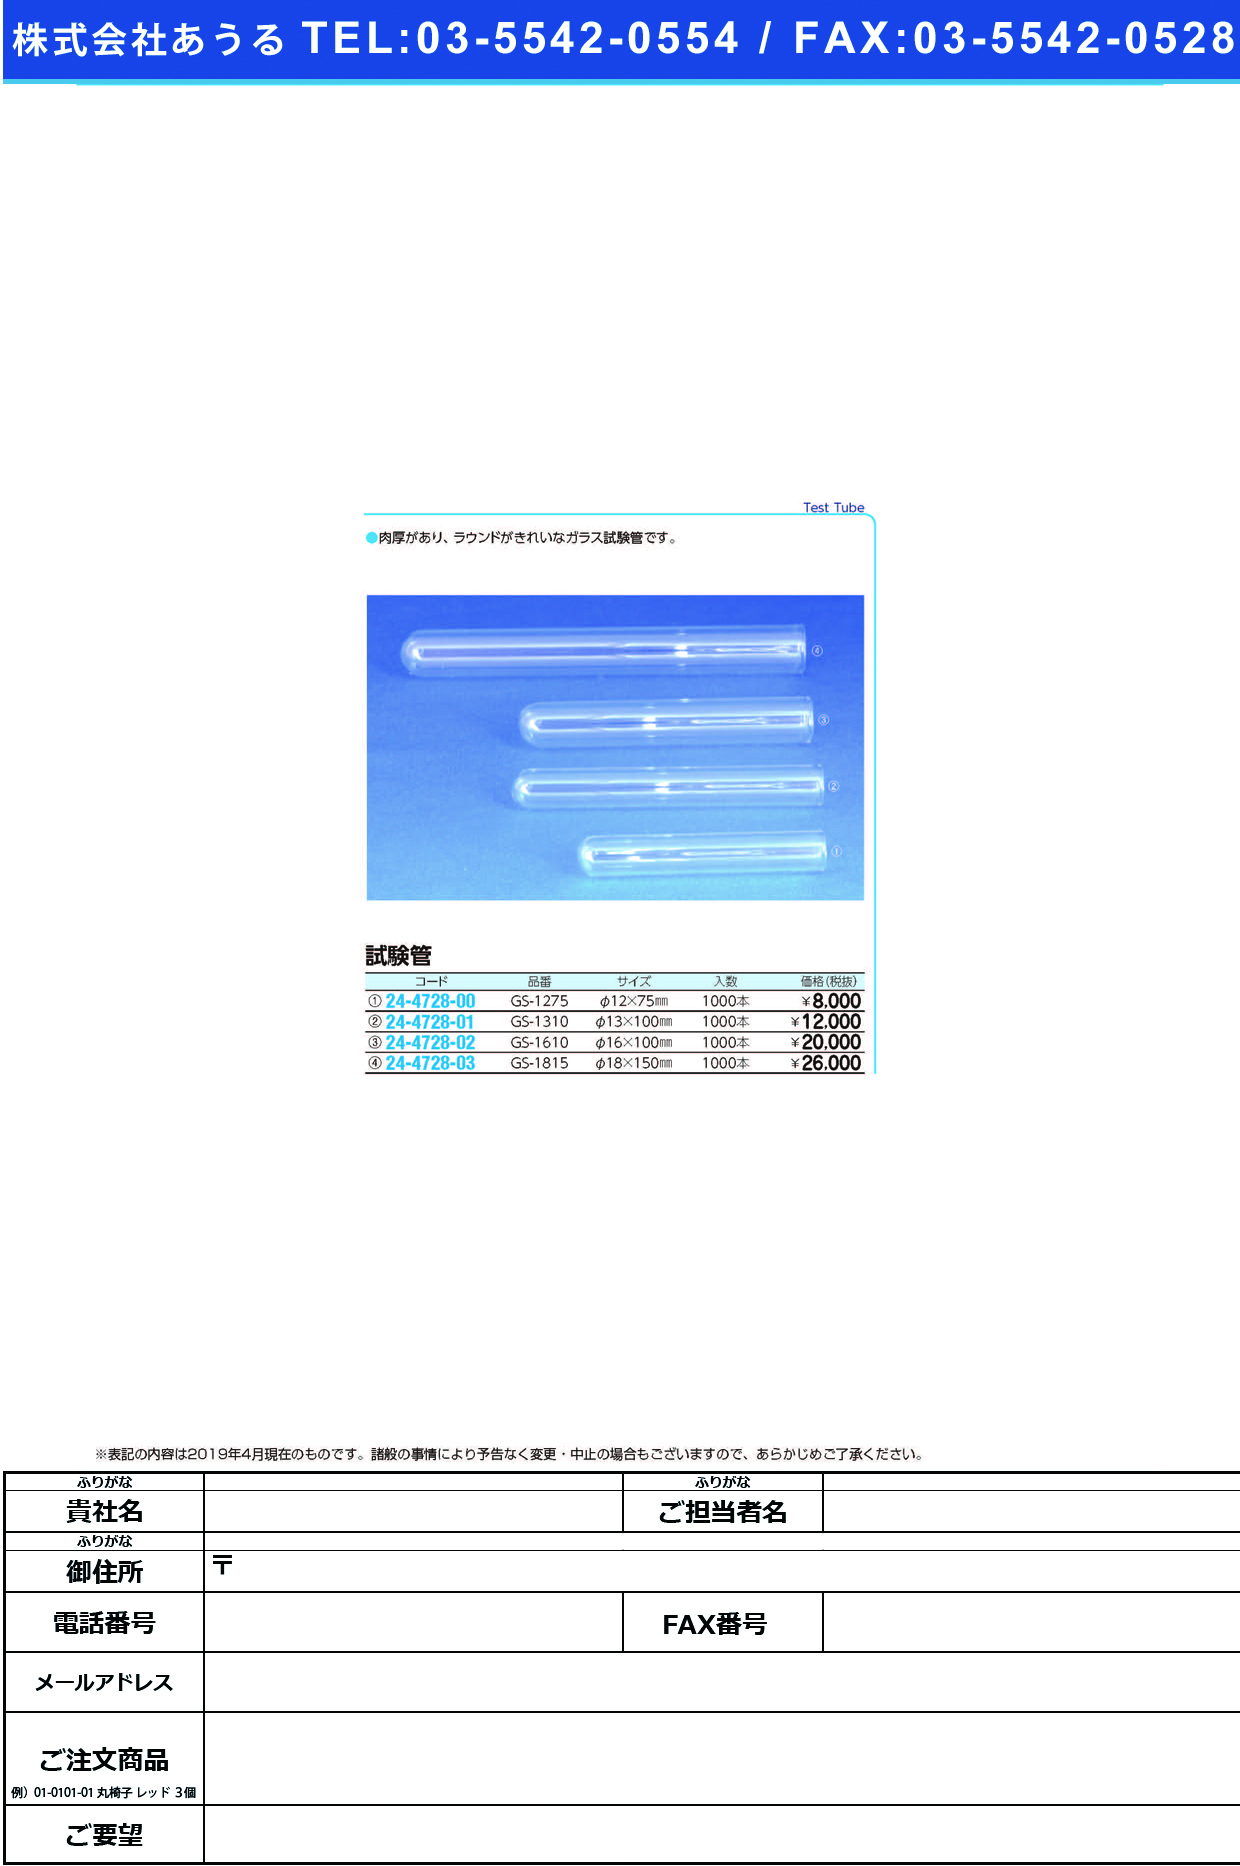 (24-4728-01)試験管（ガラス製） GS-1310(1000ﾎﾝ) ｼｹﾝｶﾝ(ｶﾞﾗｽｾｲ)【1箱単位】【2019年カタログ商品】